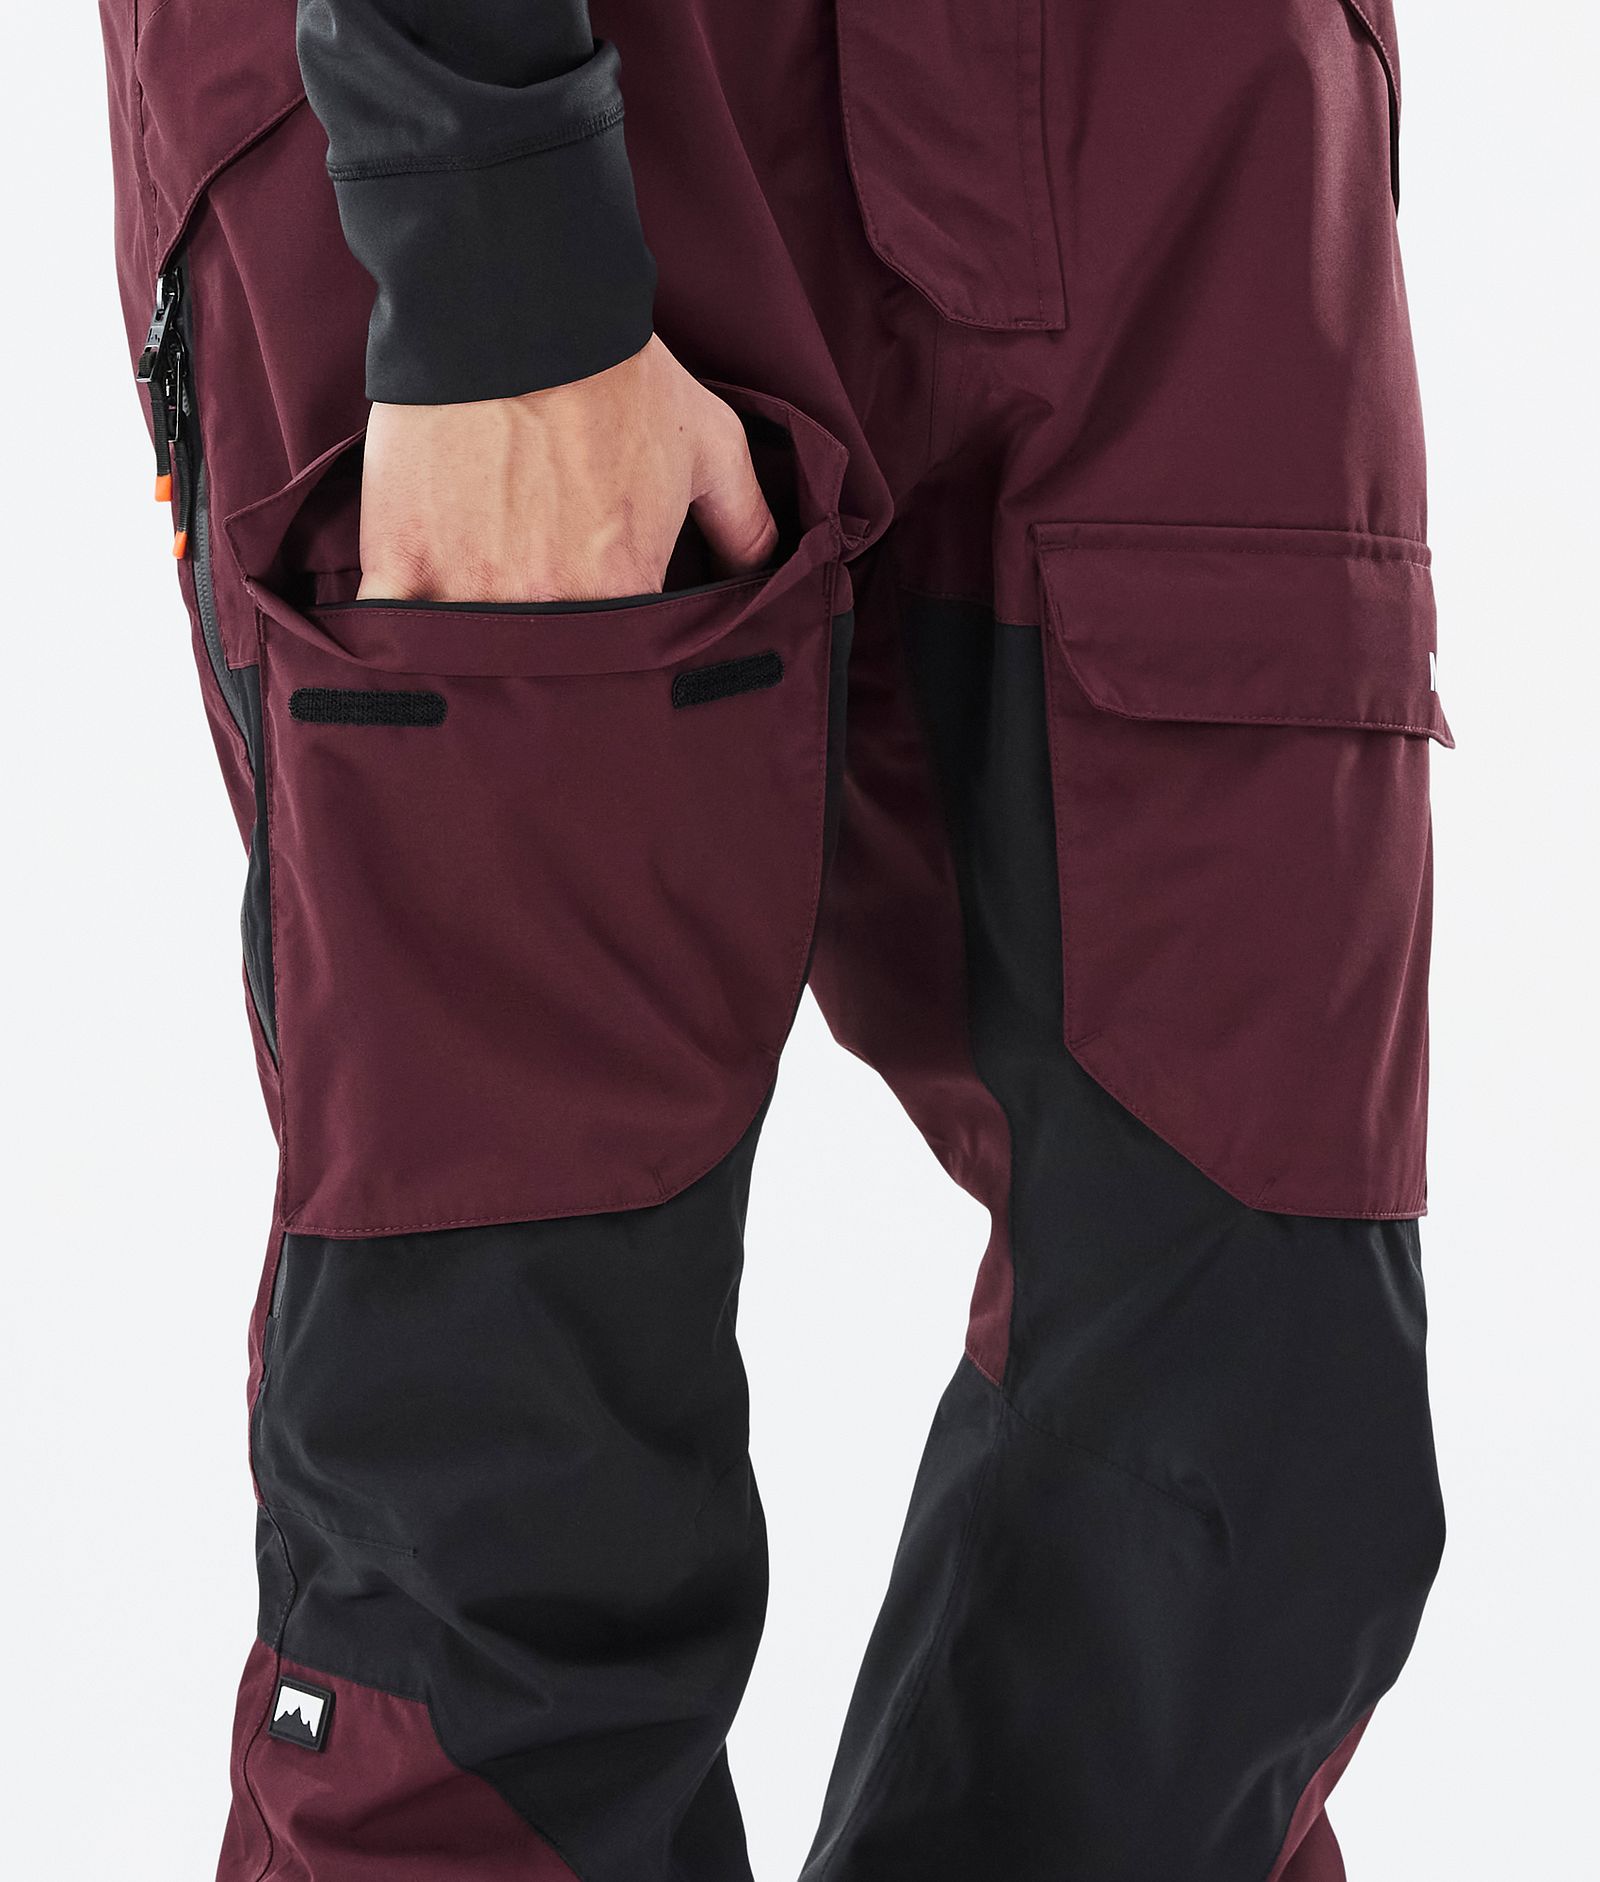 Montec Fawk Pantalon de Snowboard Homme Burgundy/Black